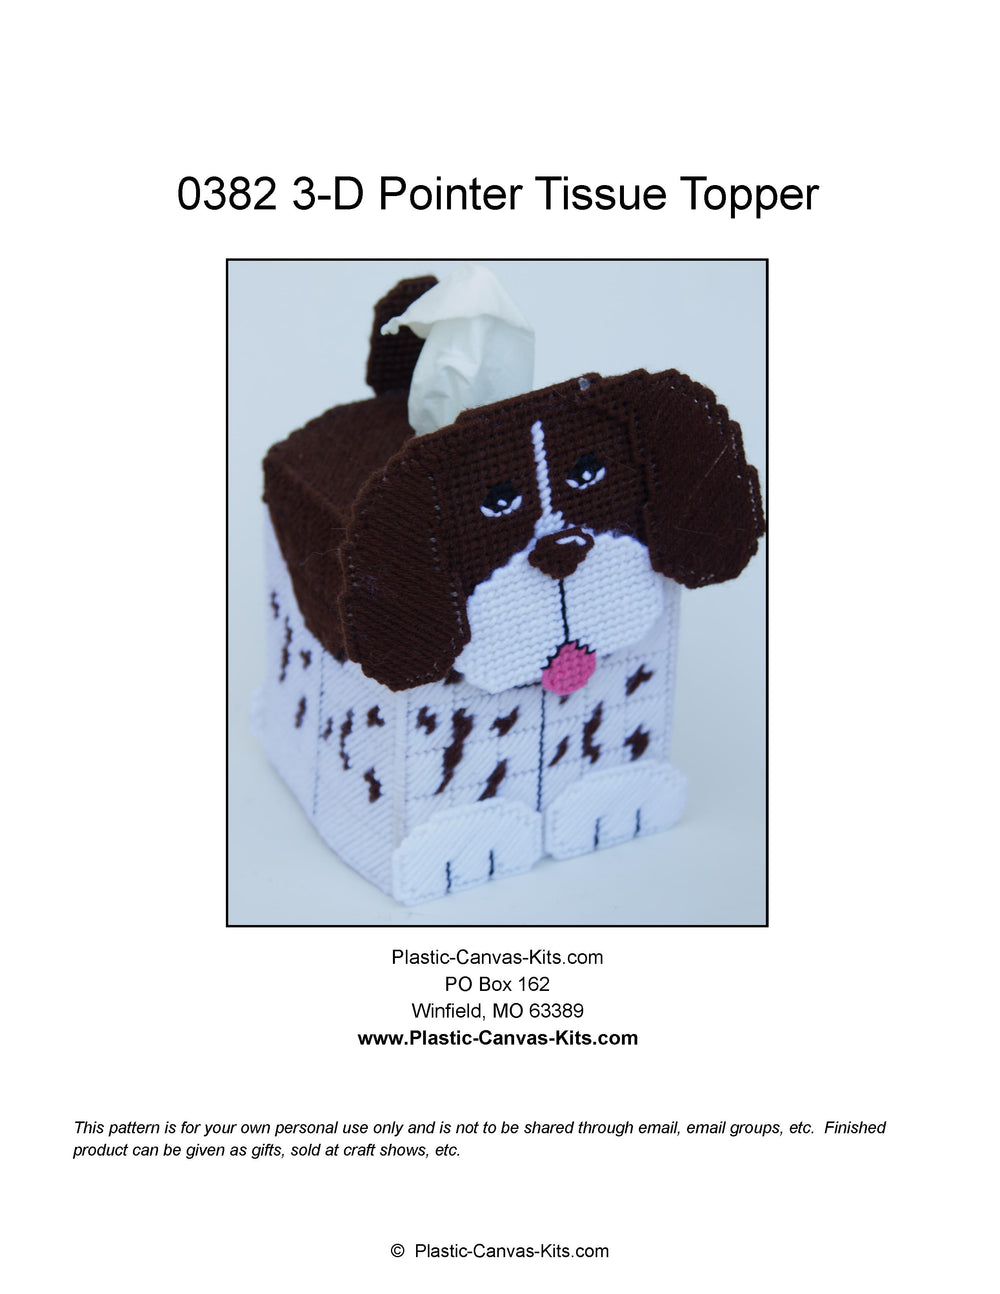 3-D Pointer Tissue Topper